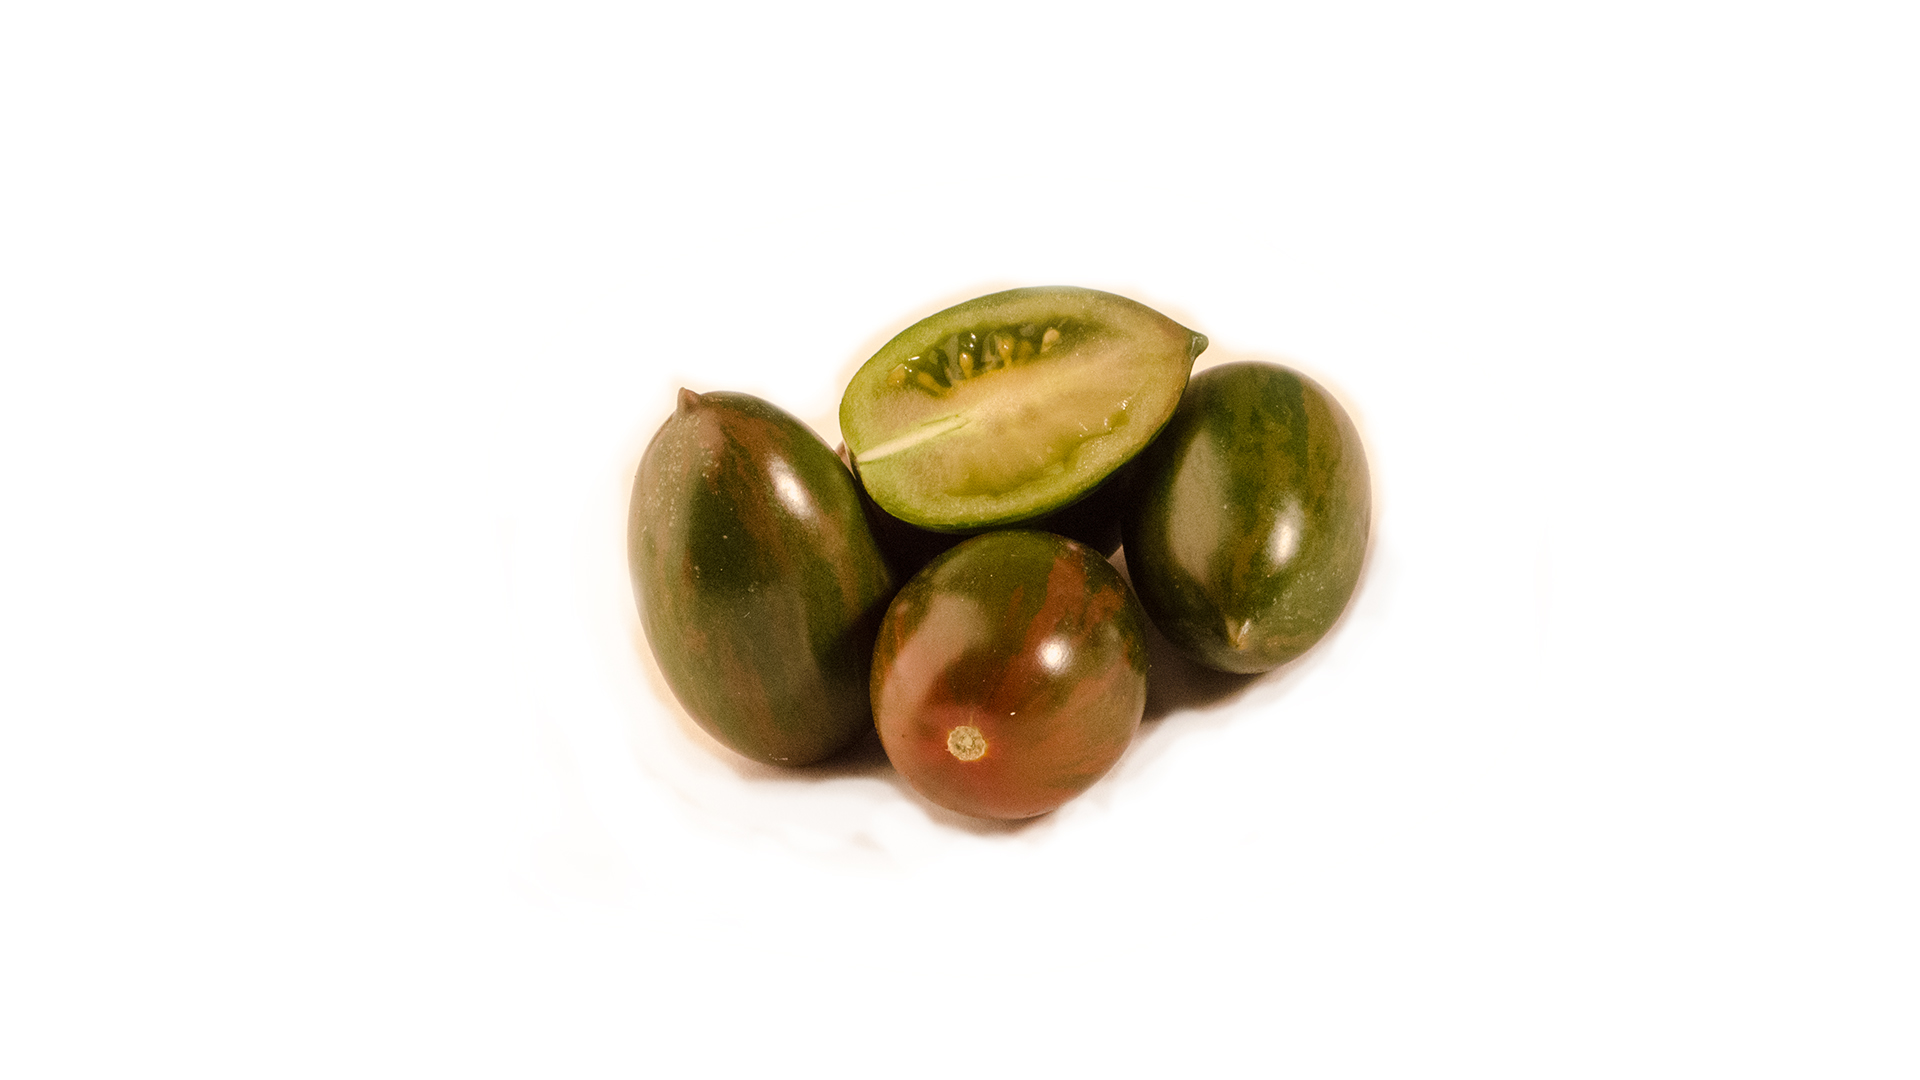 Dattel Tomaten gestreift grün braun